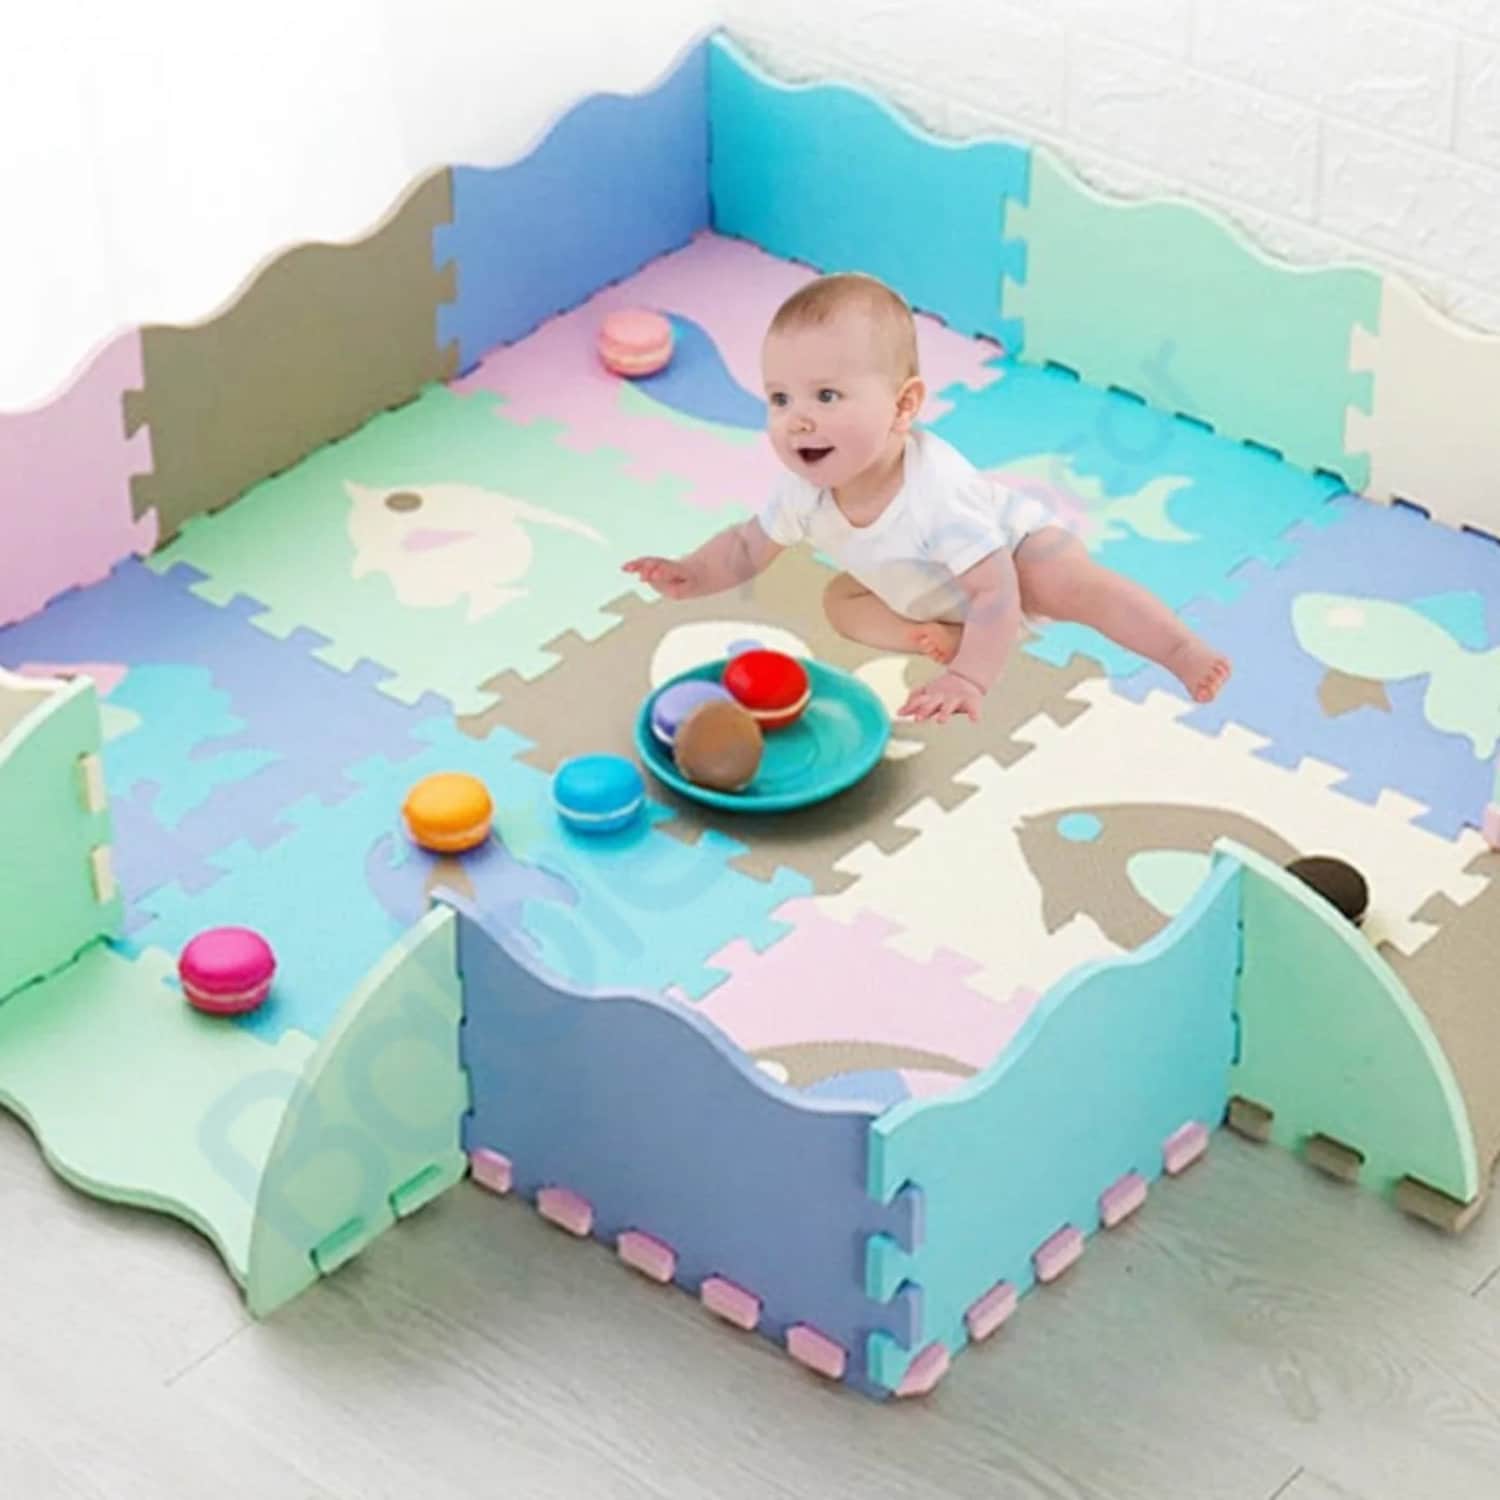 Foam Play Mat for Kids Nursery – Durable & Safe